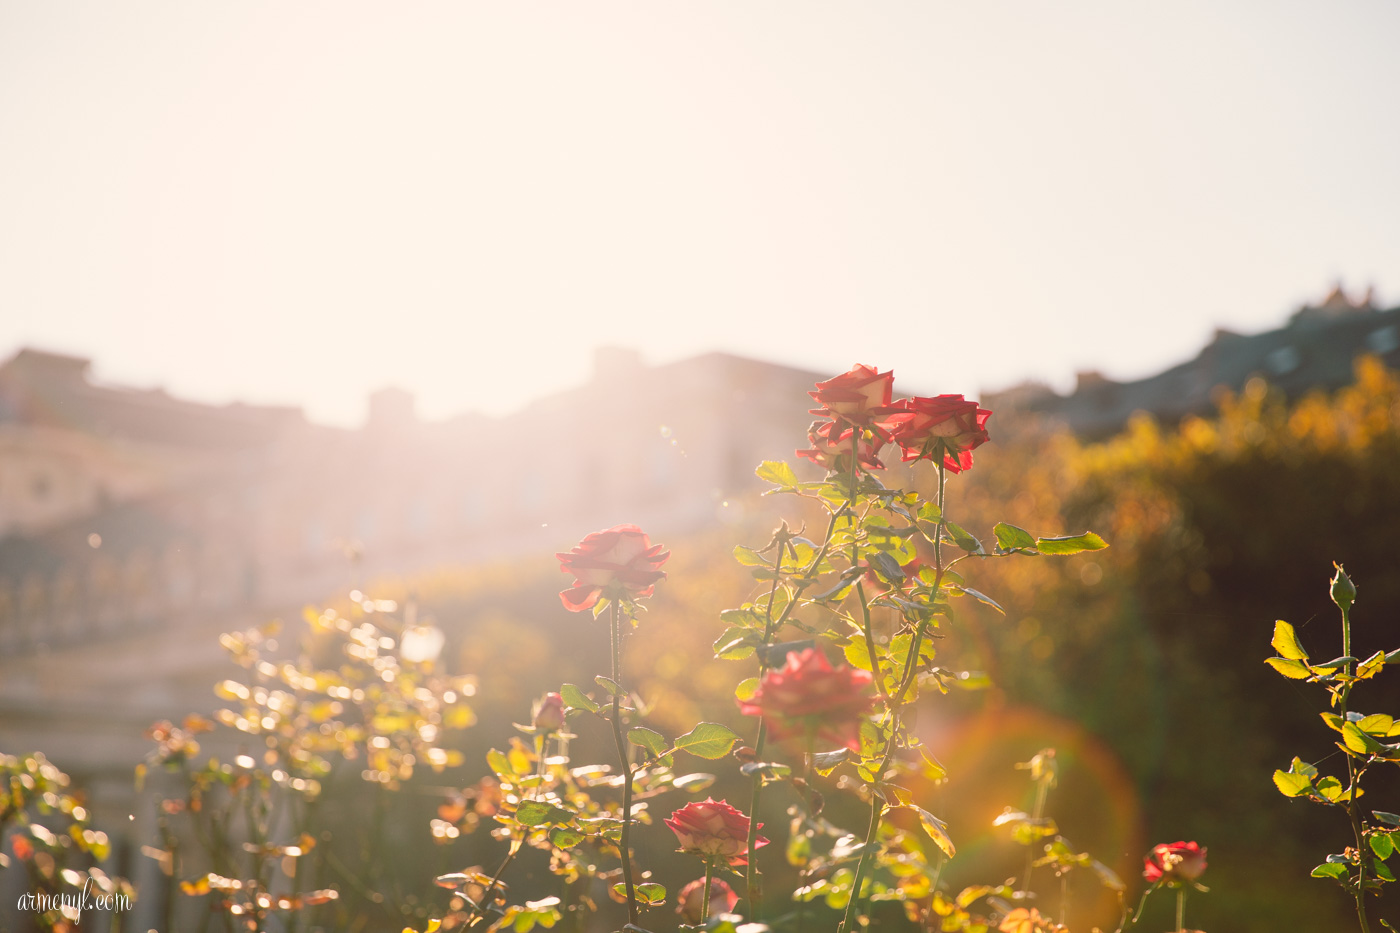 Rose Garden Garden de Palais Royal Photography by Armenyl